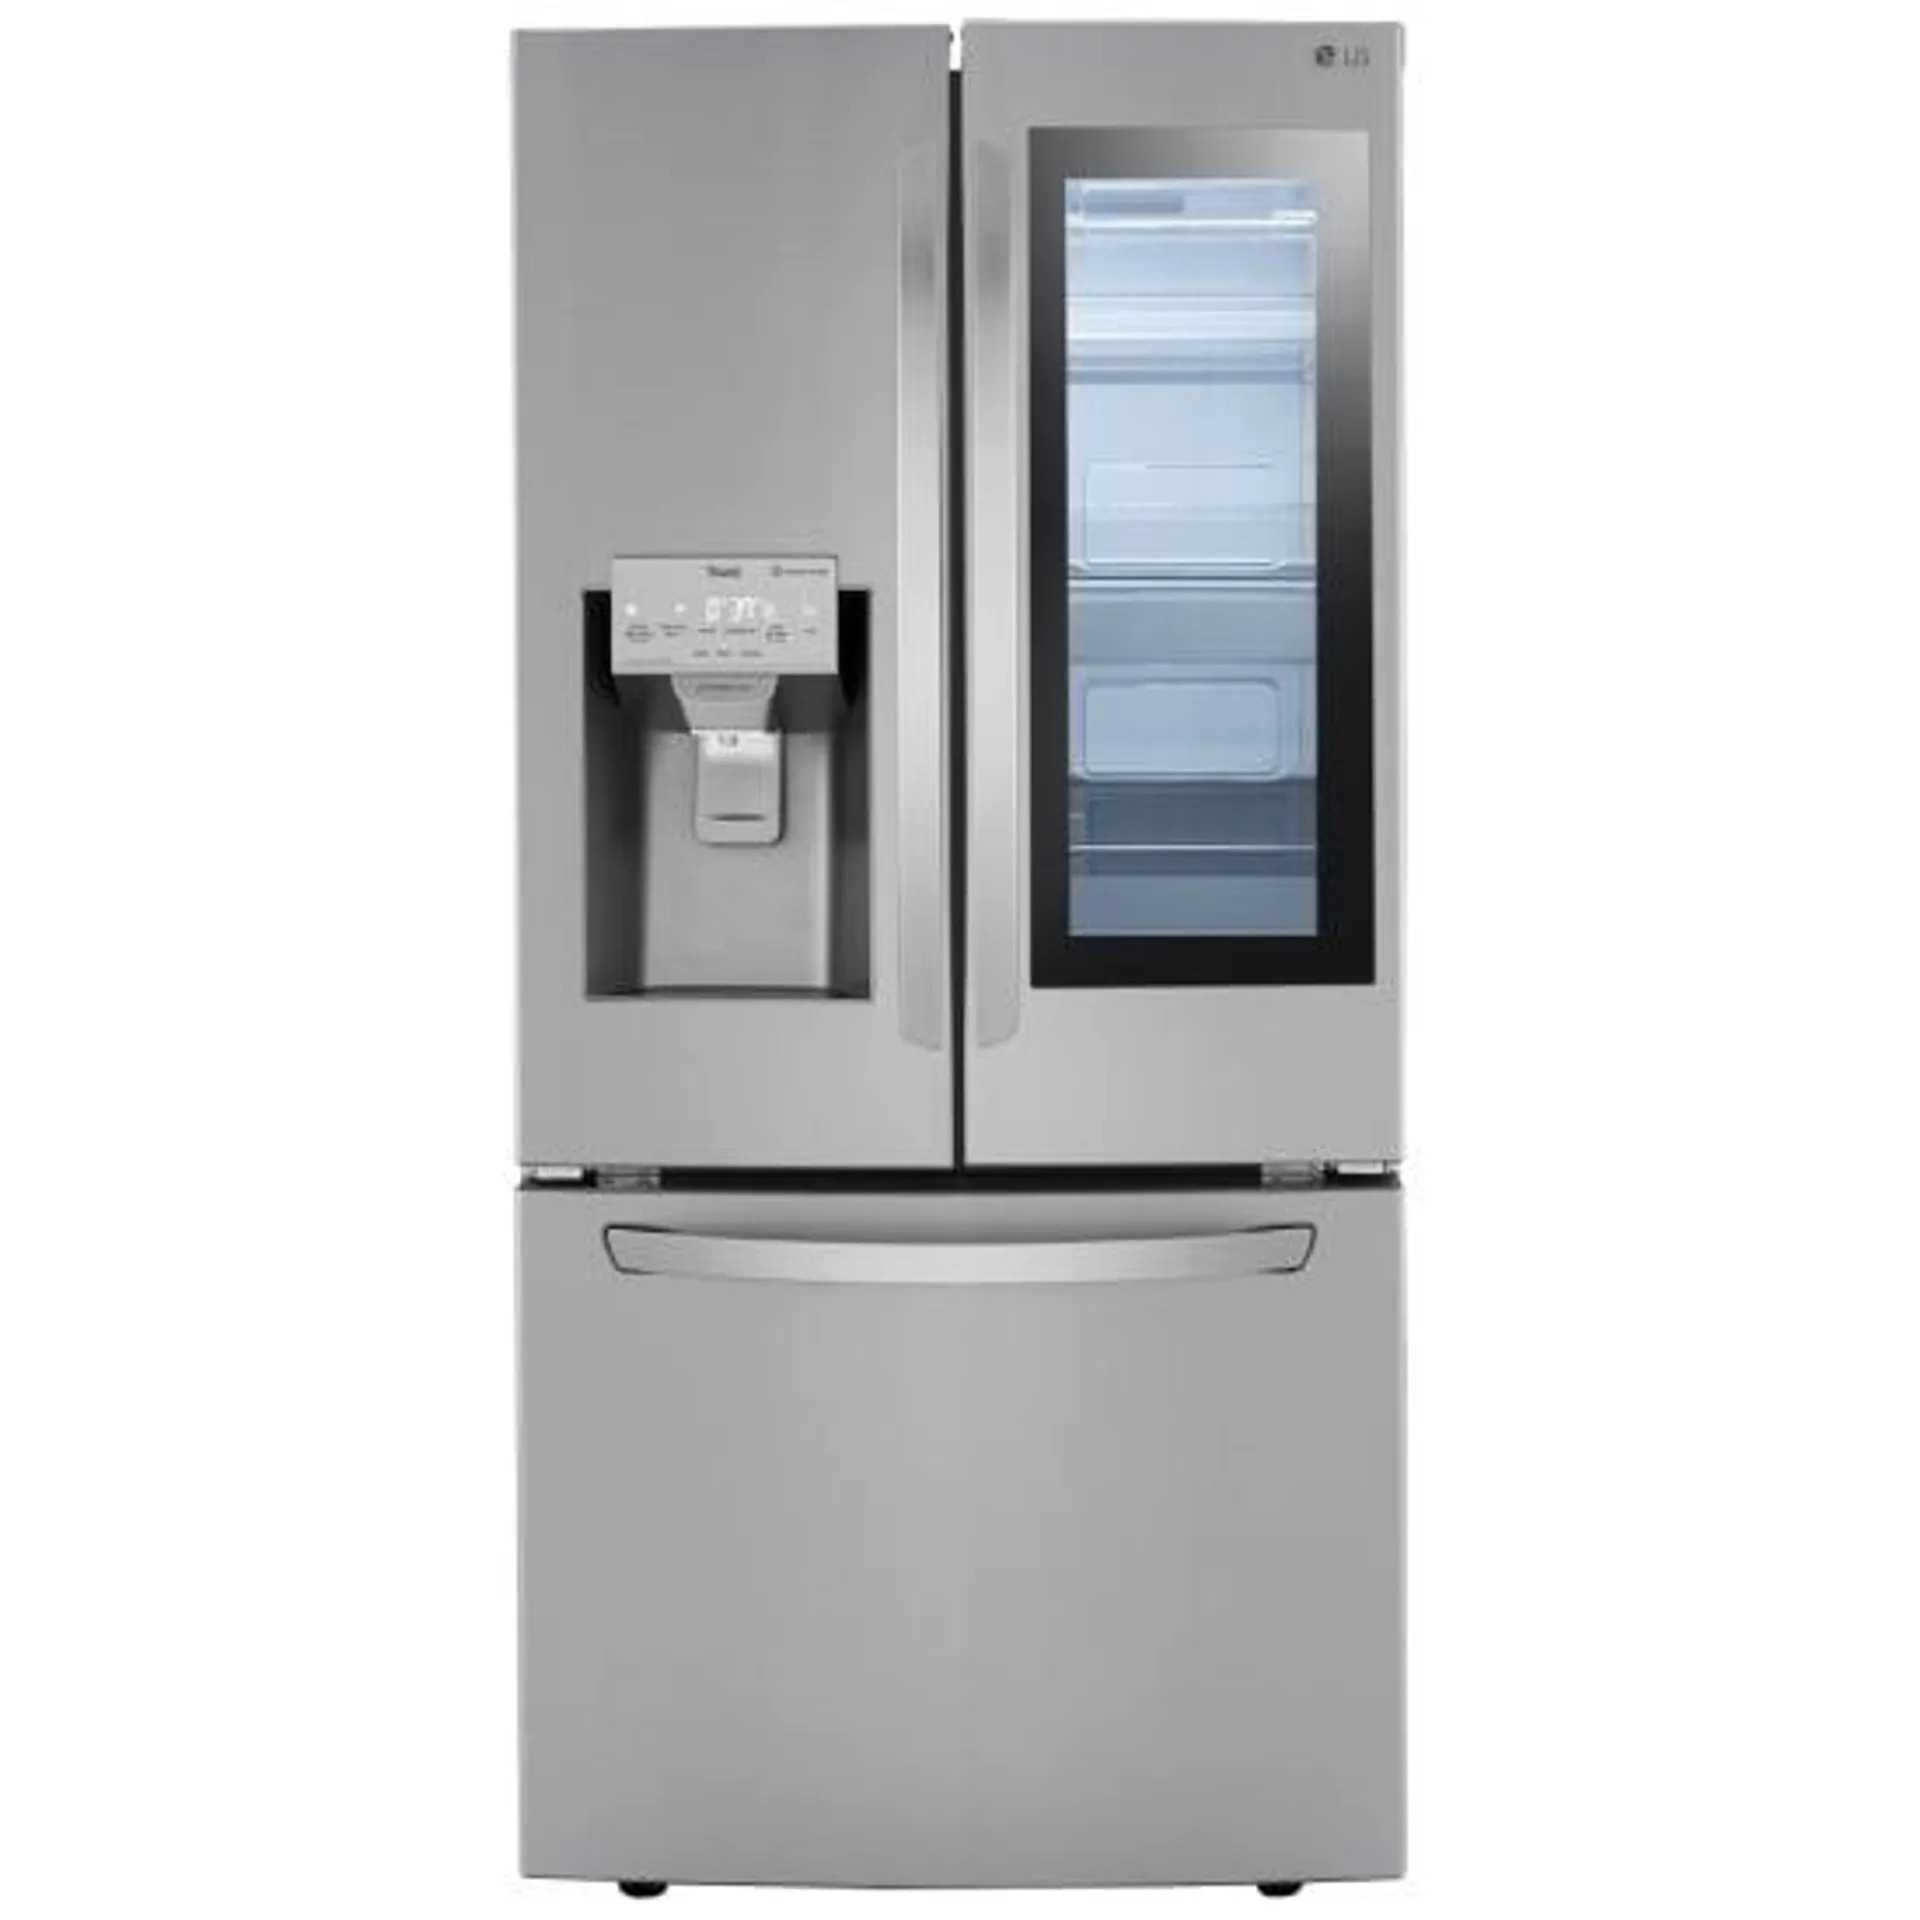 LG LRFVS2503S French Door Refrigerator, 33 inch Width, ENERGY STAR Certified, 24.4 cu. ft. Capacity, Stainless Steel colour Dual Ice Maker, Door Cooling+, Cool Guard, InstaView, Door-in-Door, Craft Ice